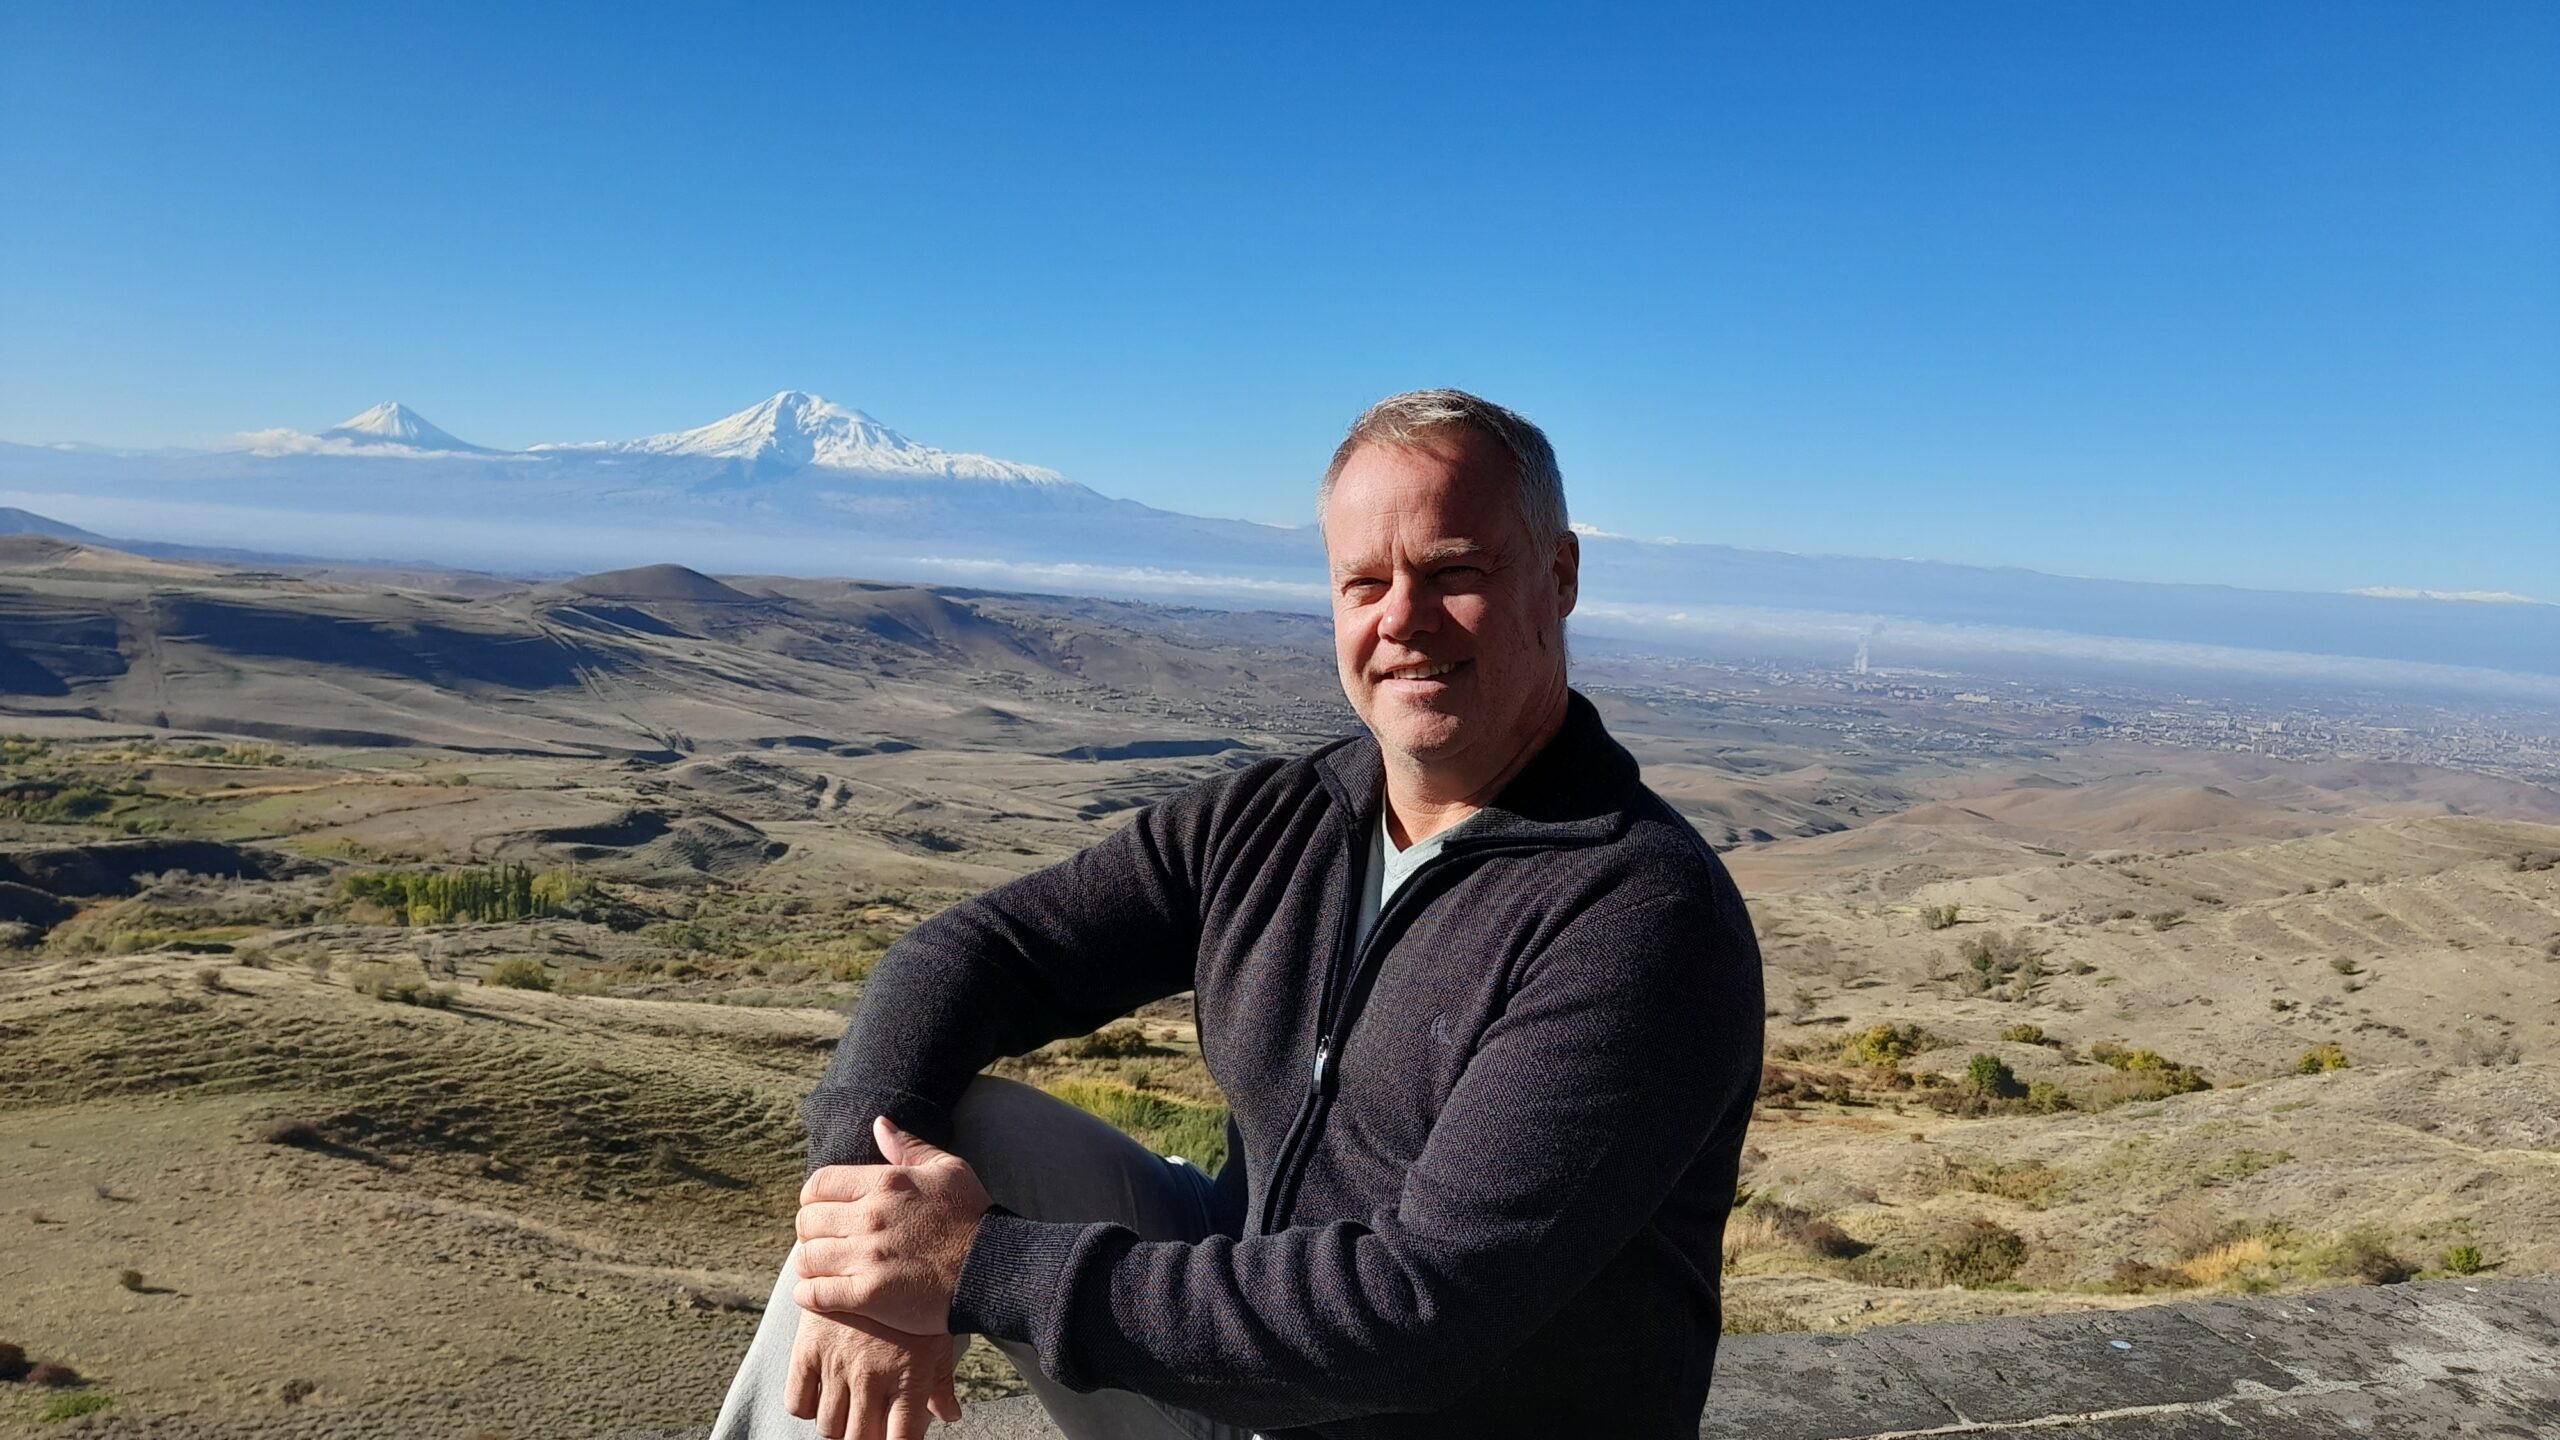 Traveltoer-Johnny-at-Mount-Ararat-in-Armenia